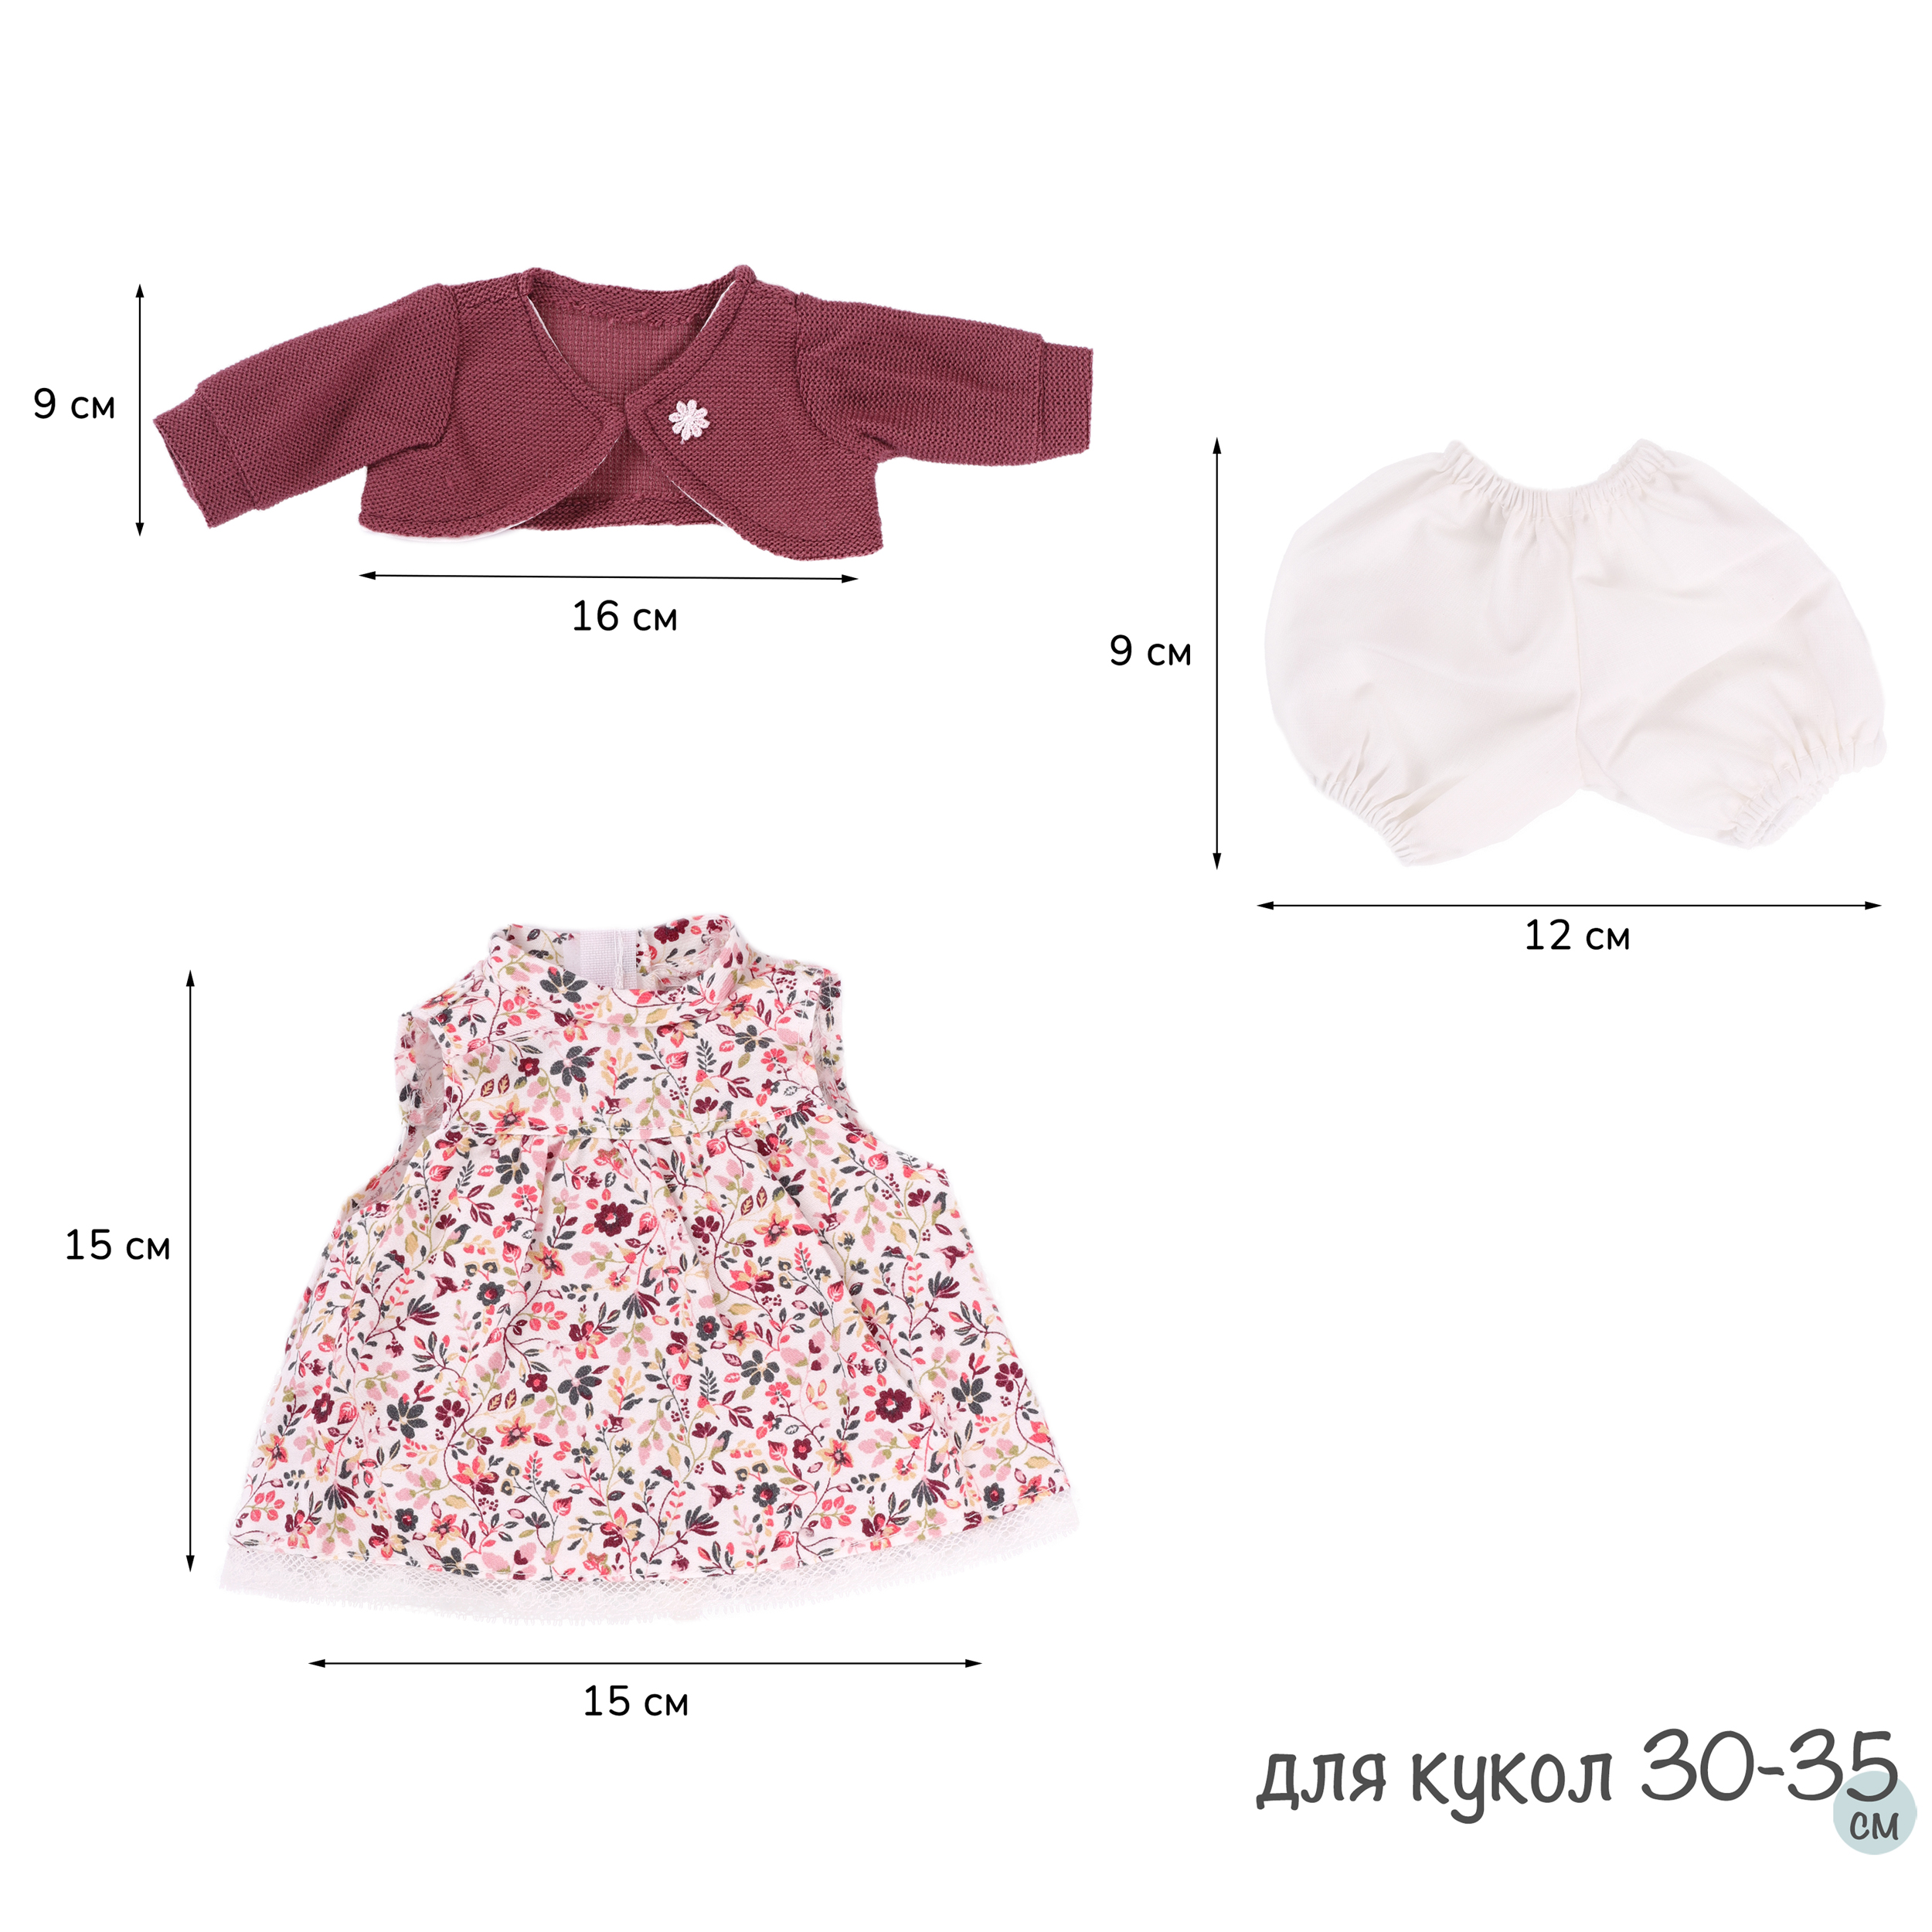 Одежда для кукол и пупсов 30-35 см платье болеро вишневое трусики  